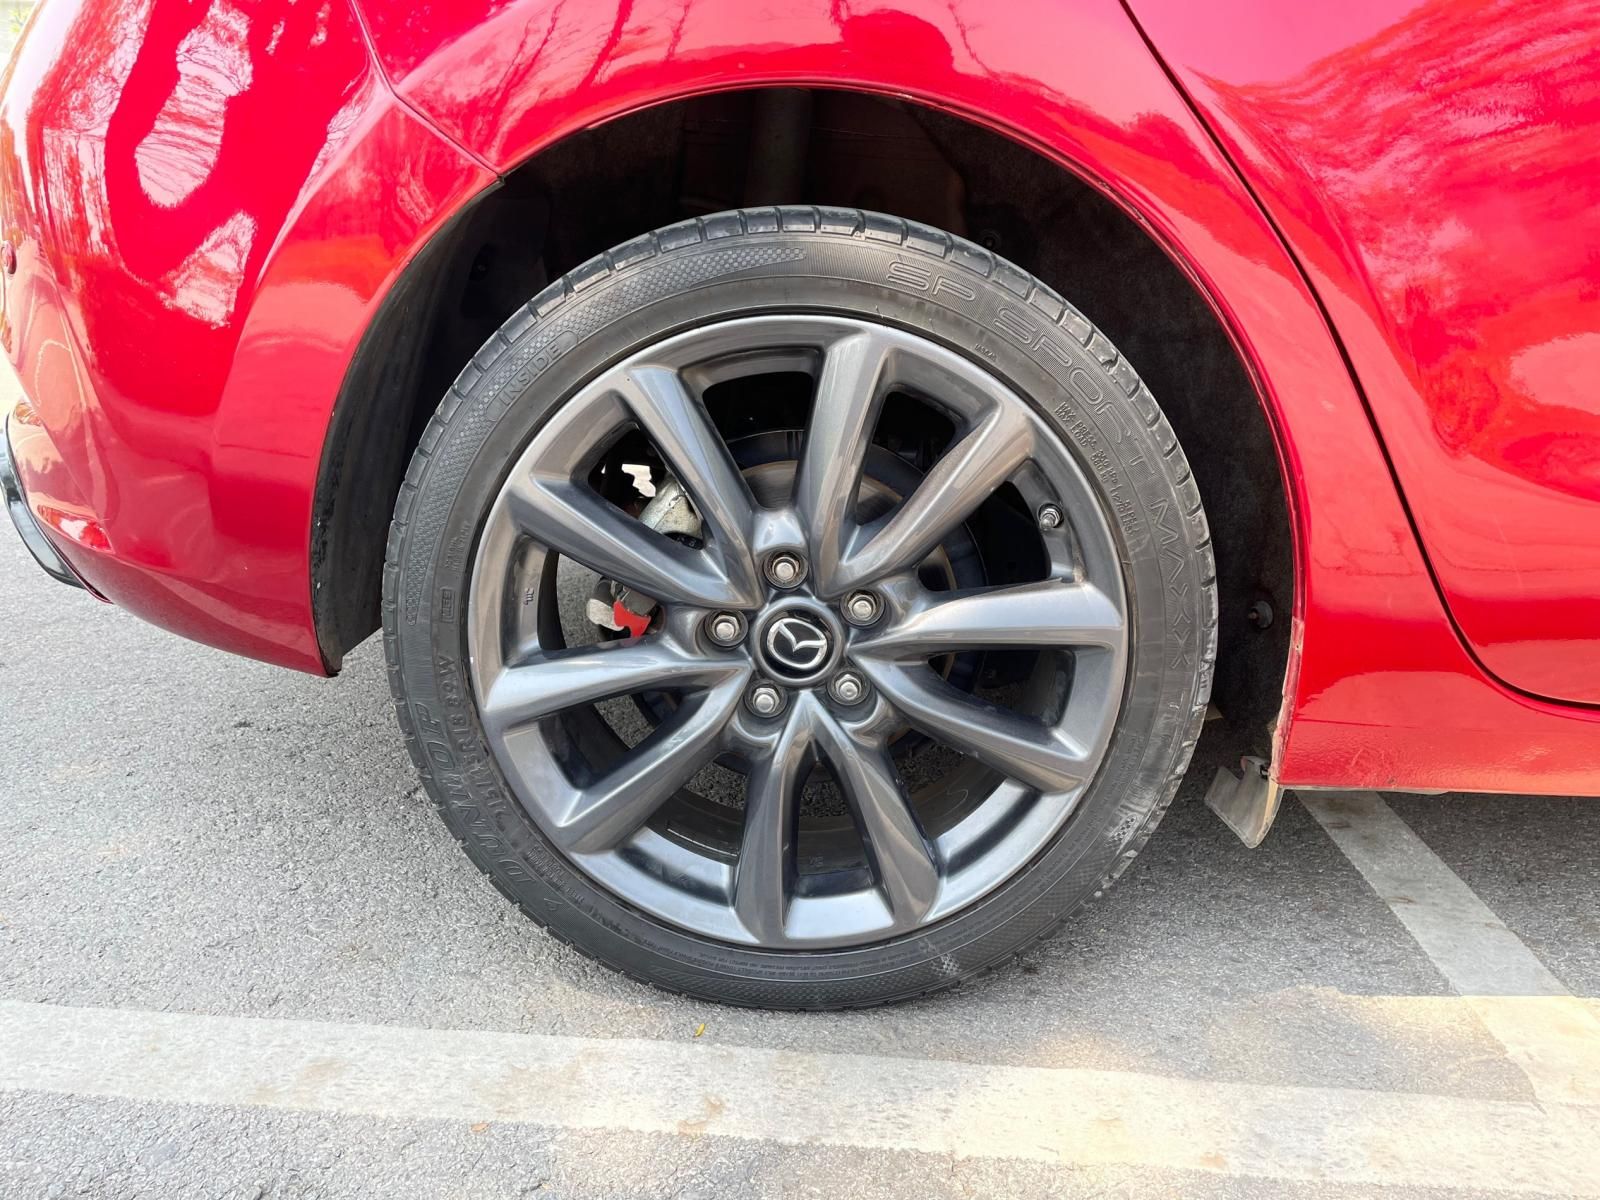 Mazda 3 2019 - 1 chủ từ mới, lên rất nhiều đồ chơi